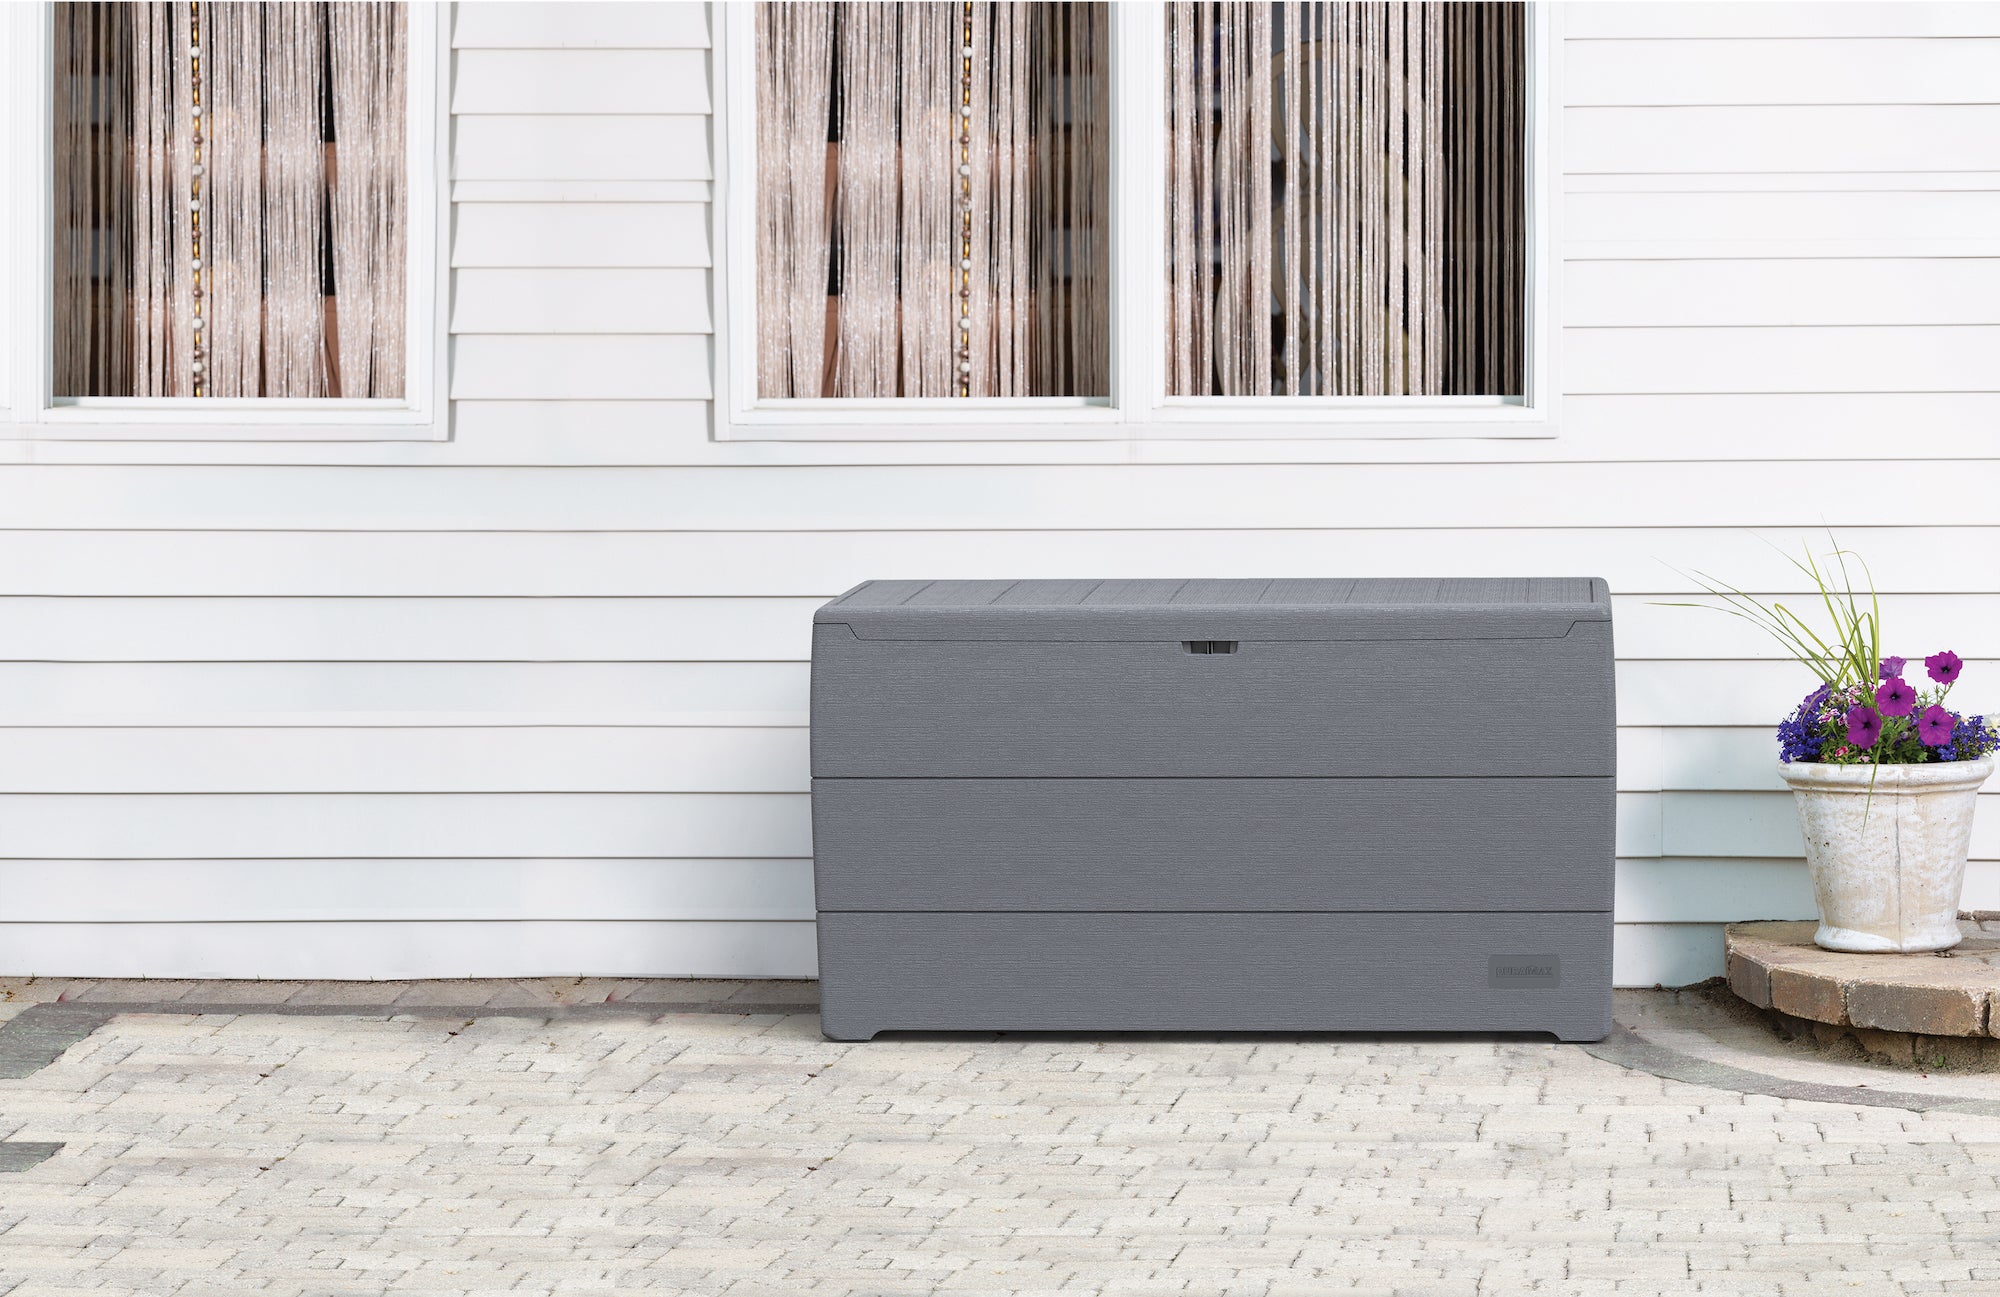 Duramax 71 Gallon Gray Outdoor Resin Deck Box, Garden Furniture Organizer